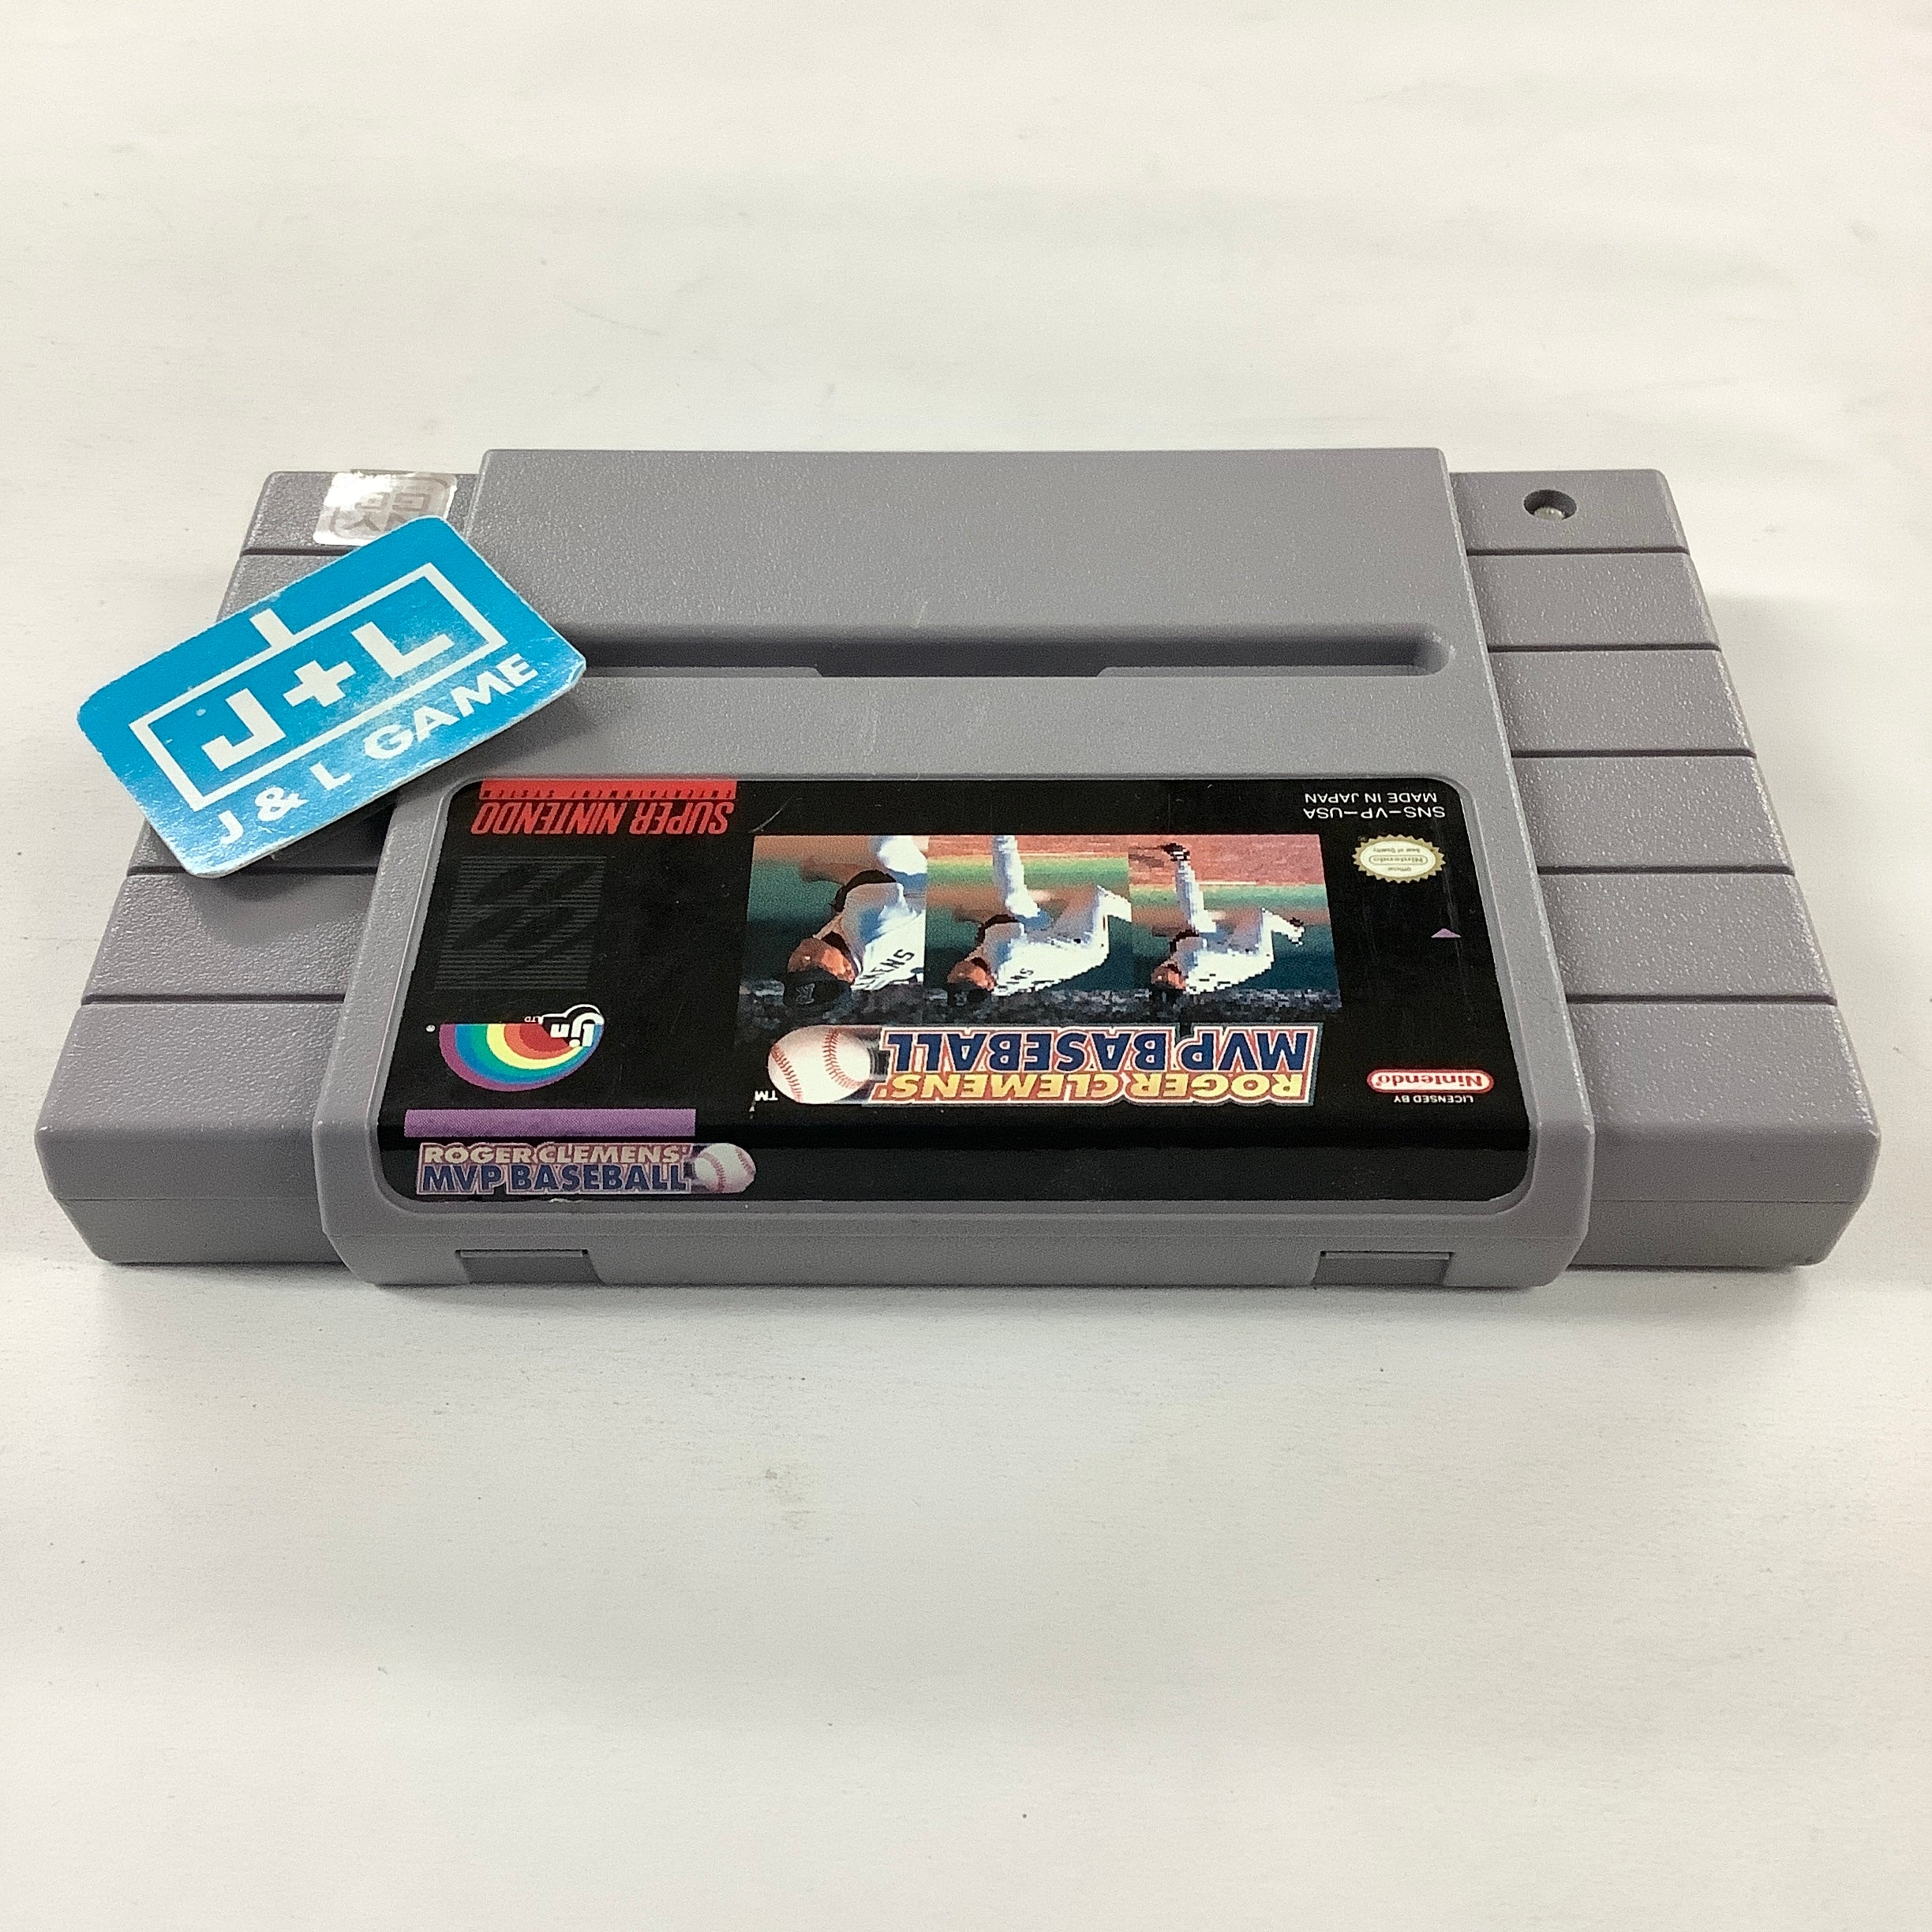 Roger Clemens' MVP Baseball - (SNES) Super Nintendo [Pre-Owned] Video Games LJN Ltd.   